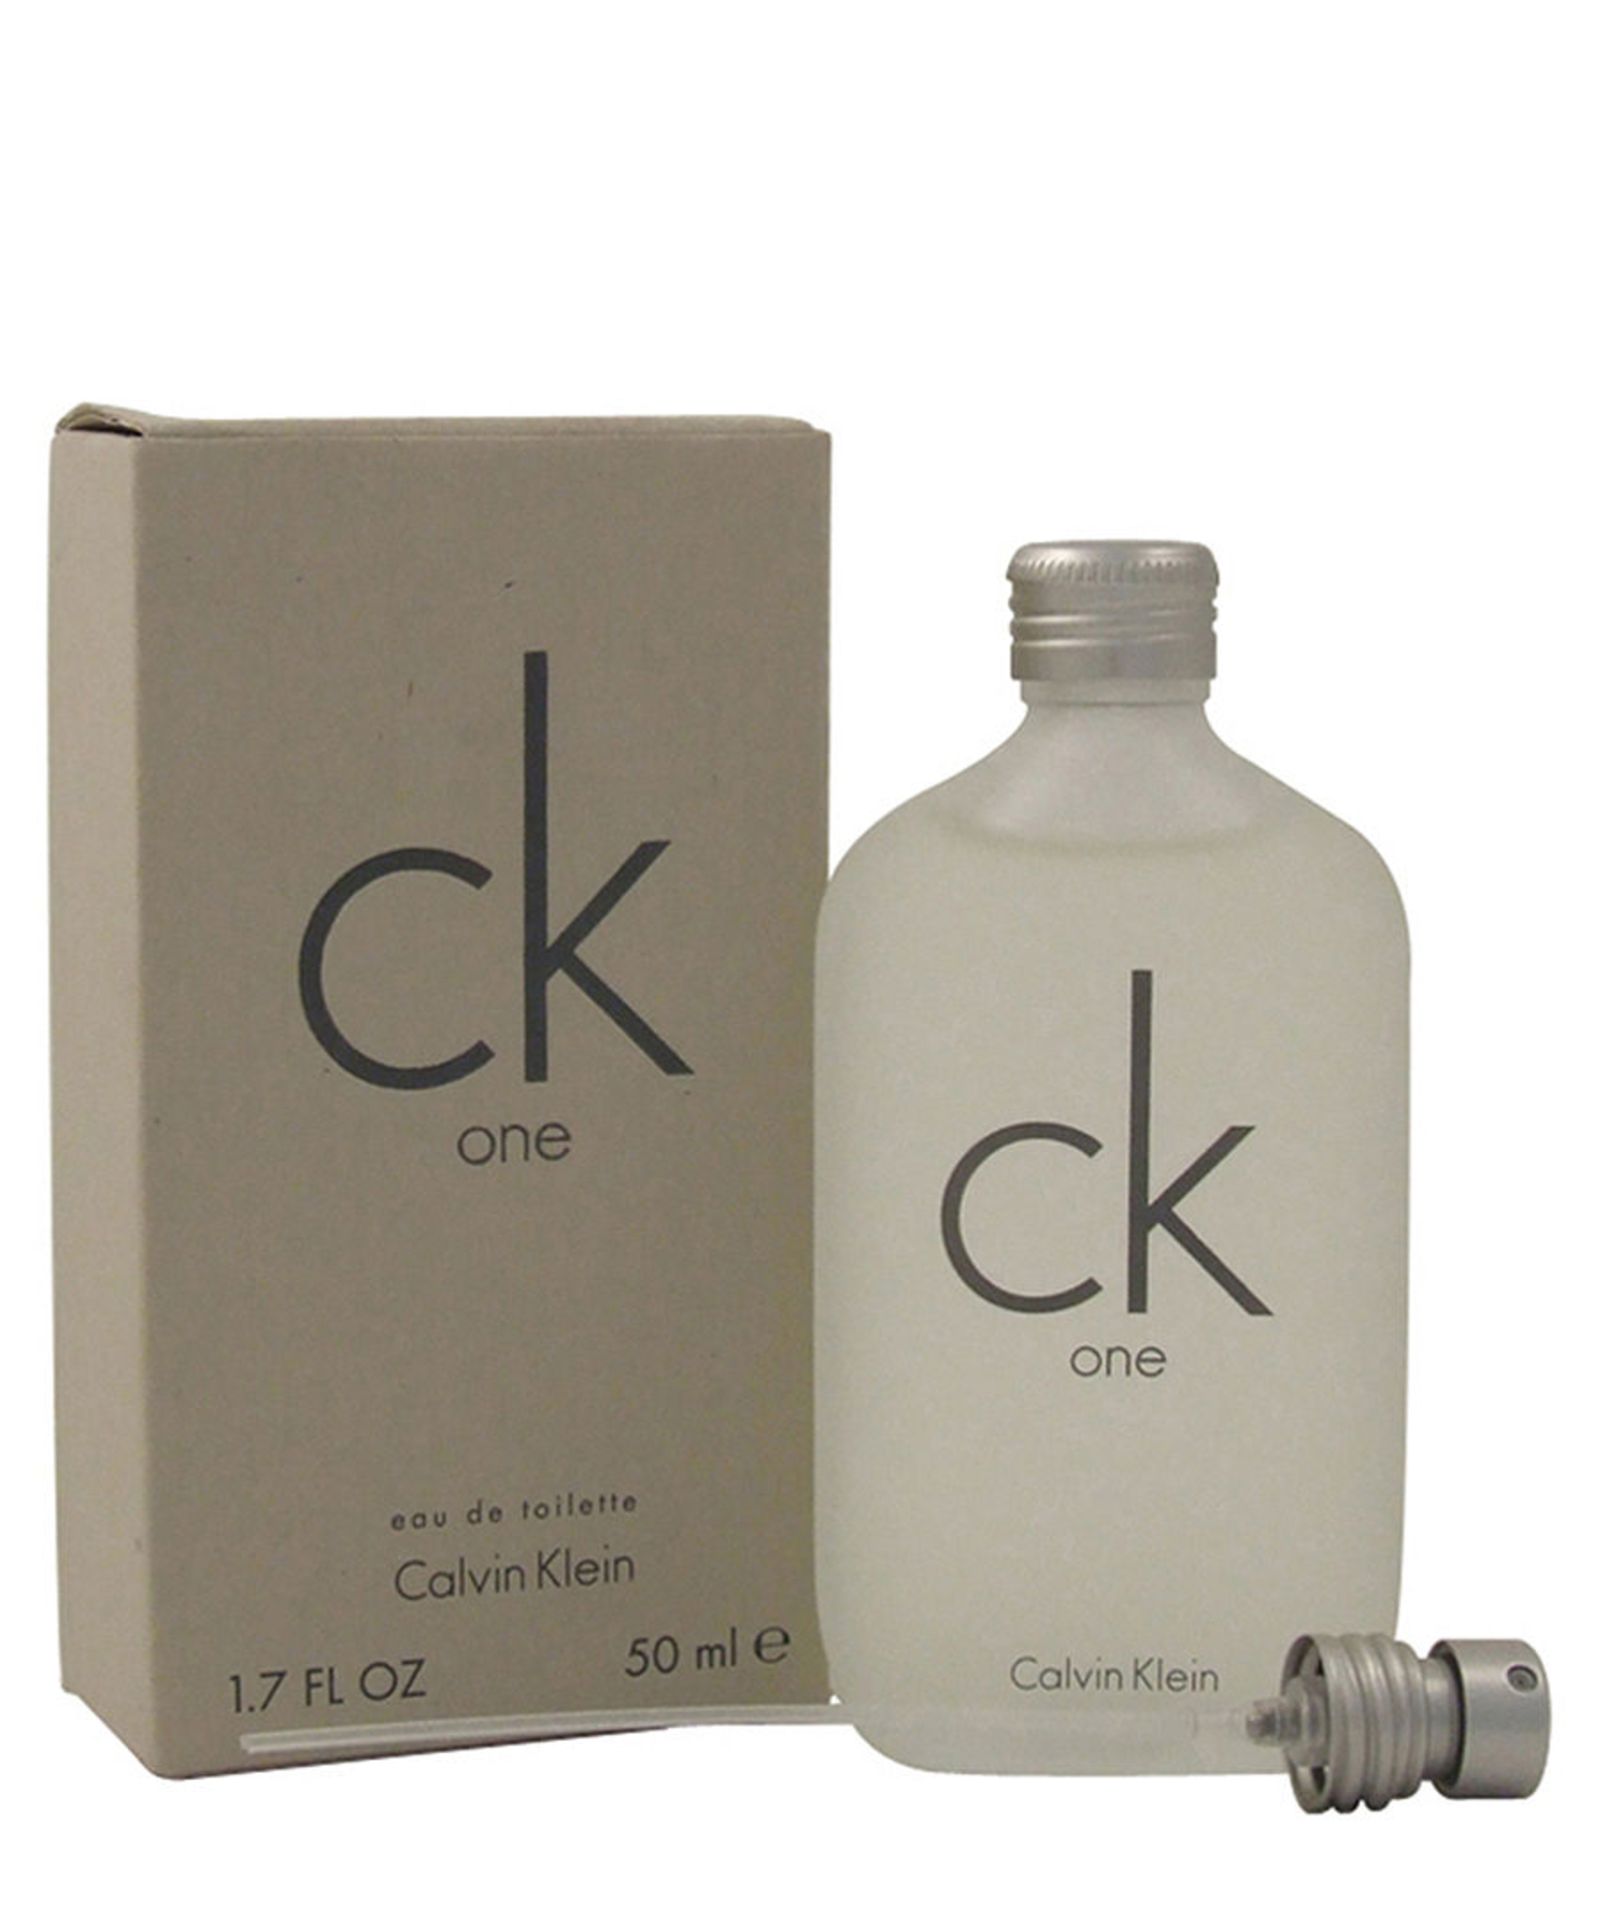 V Calvin Klein CK One EDT vaporiser gift 50ml Eau de toilette and 100ml skin moisturiser